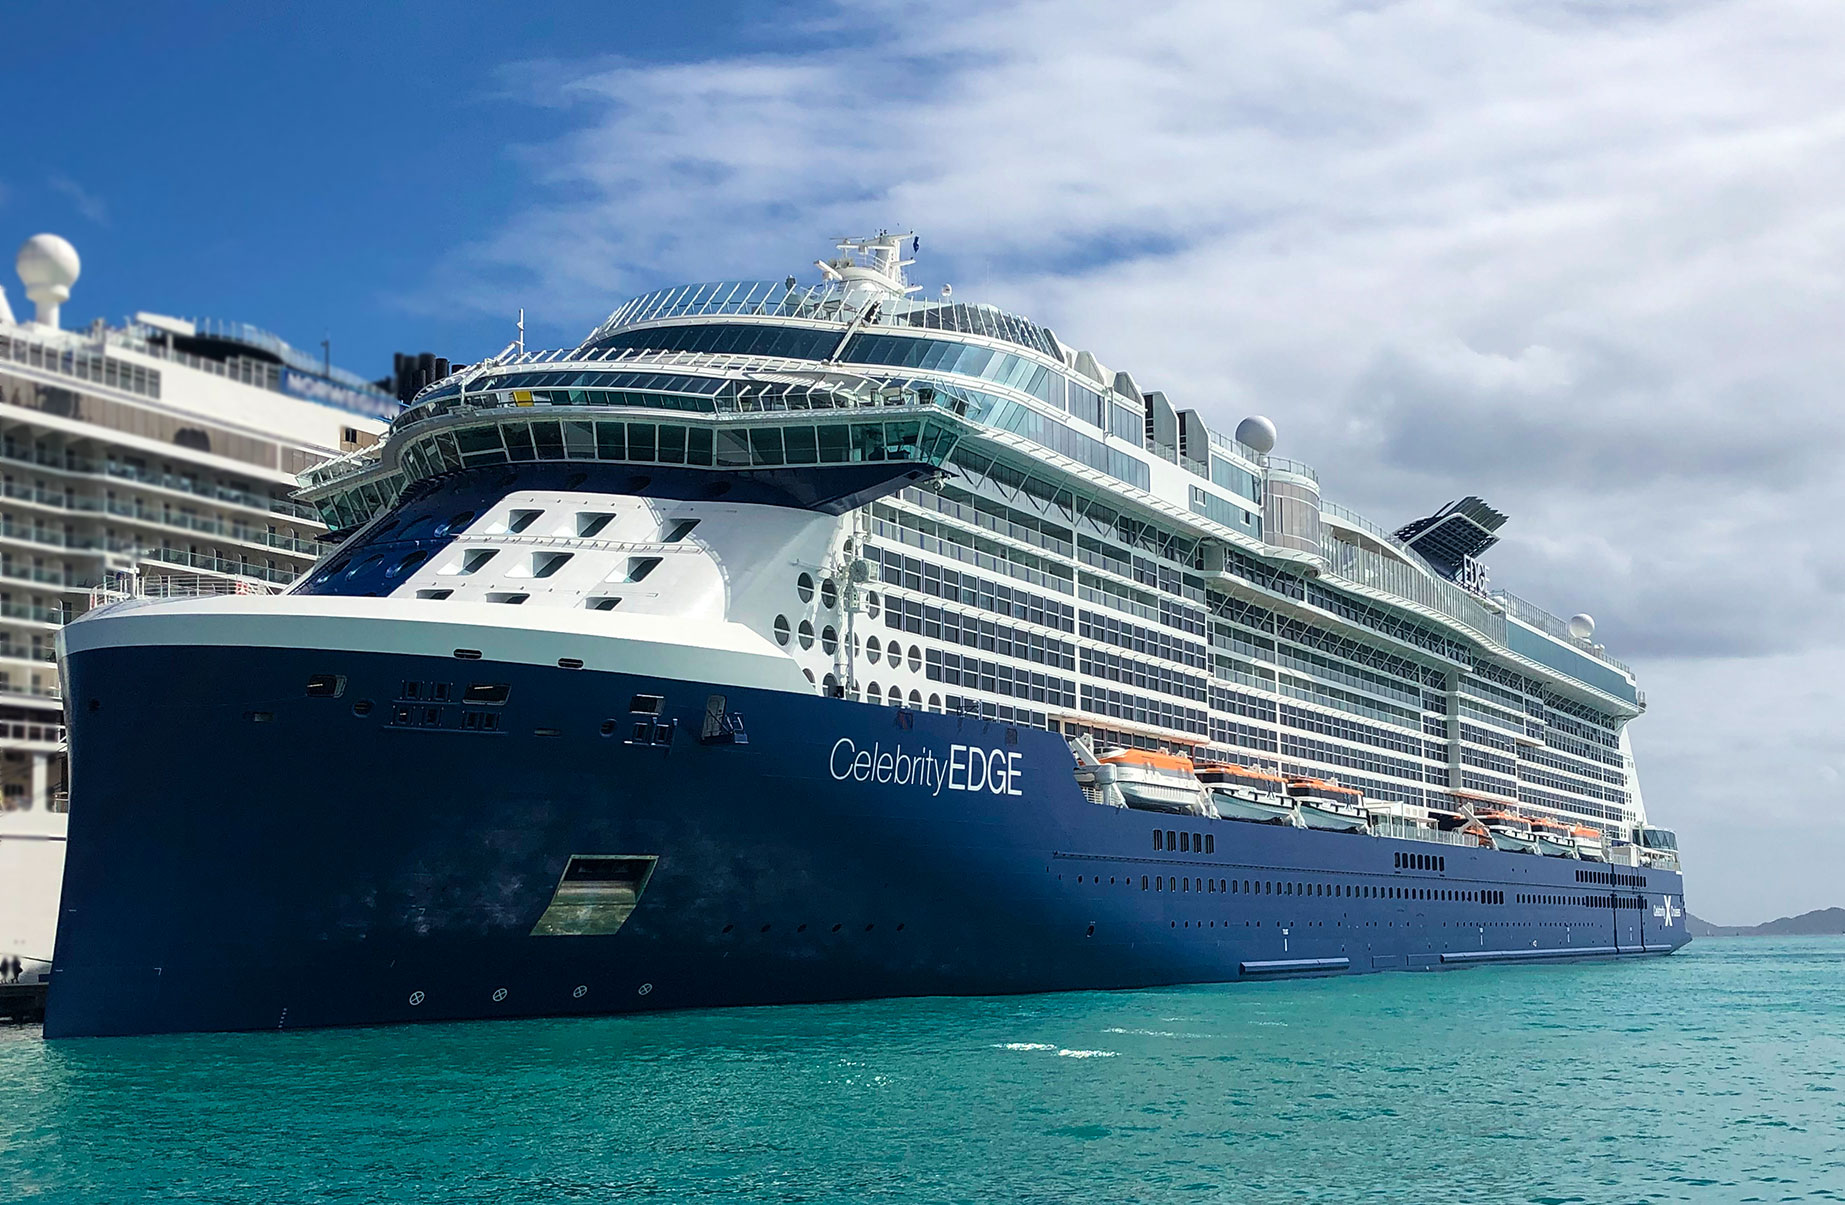 Celebrity Edge docked in Tortola